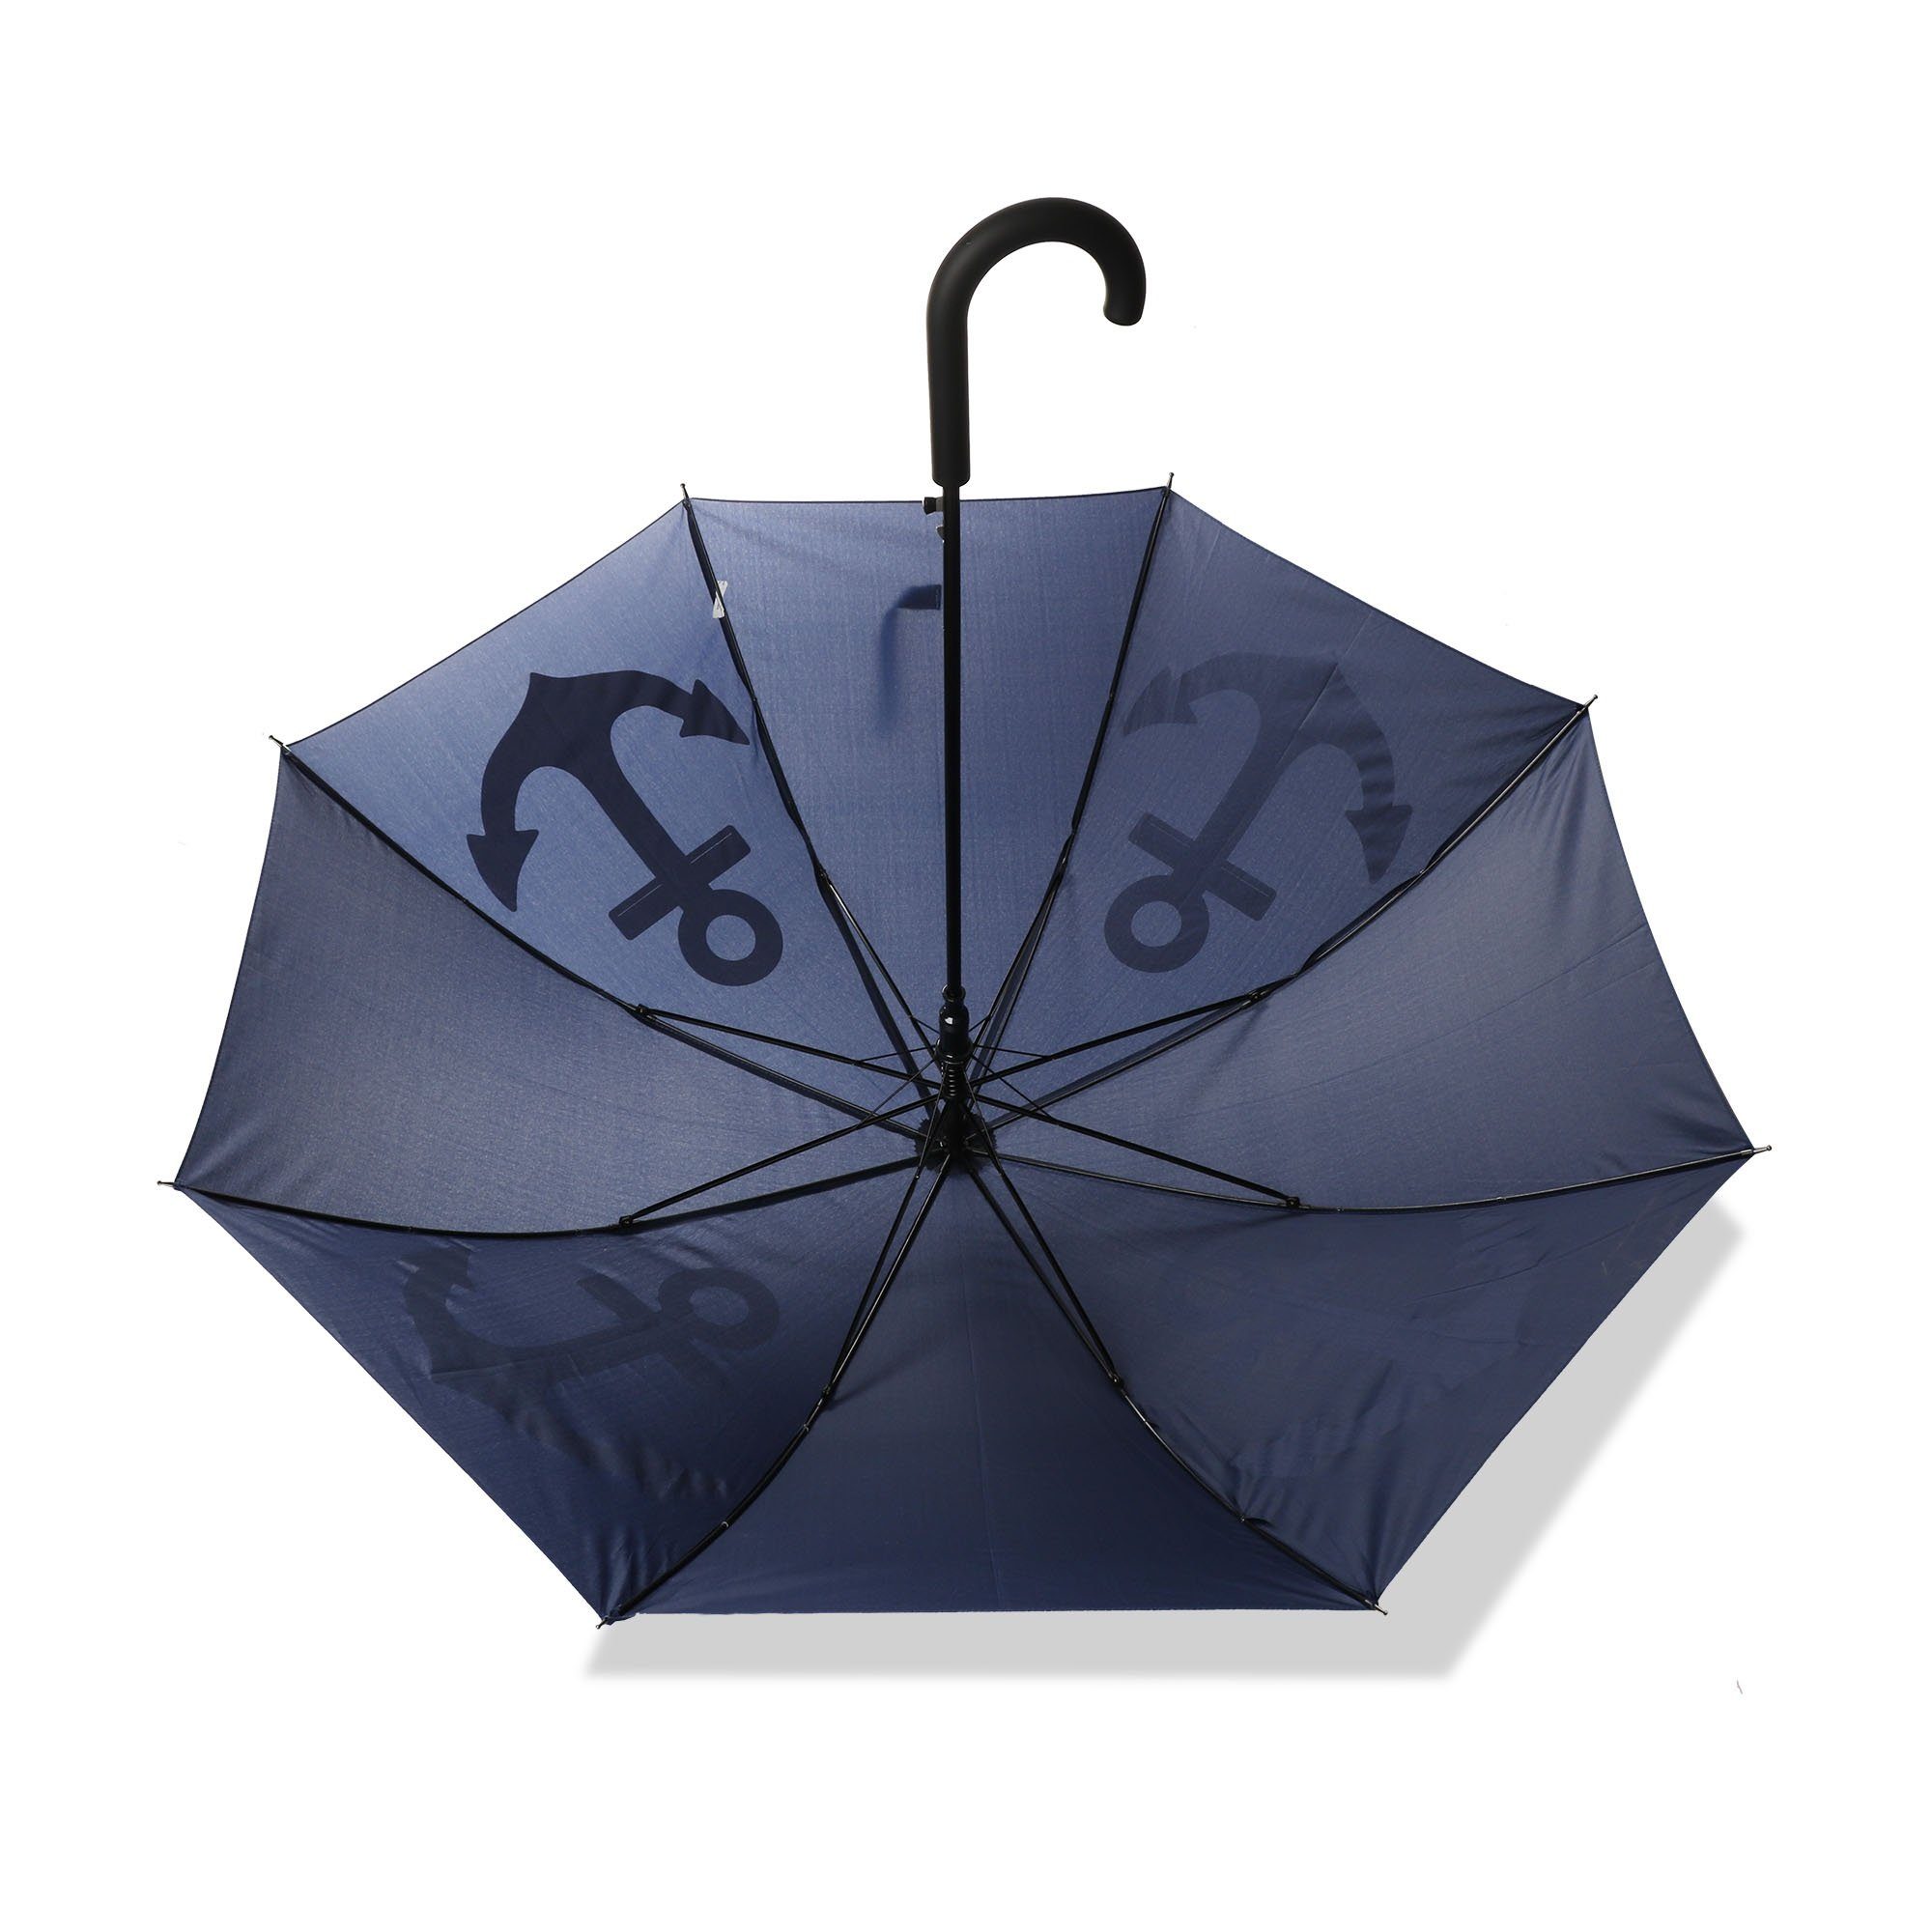 Taschenregenschirm Sonia maritim Originelli Stockschirm blau marine "Anker" Schutz Regenschirm